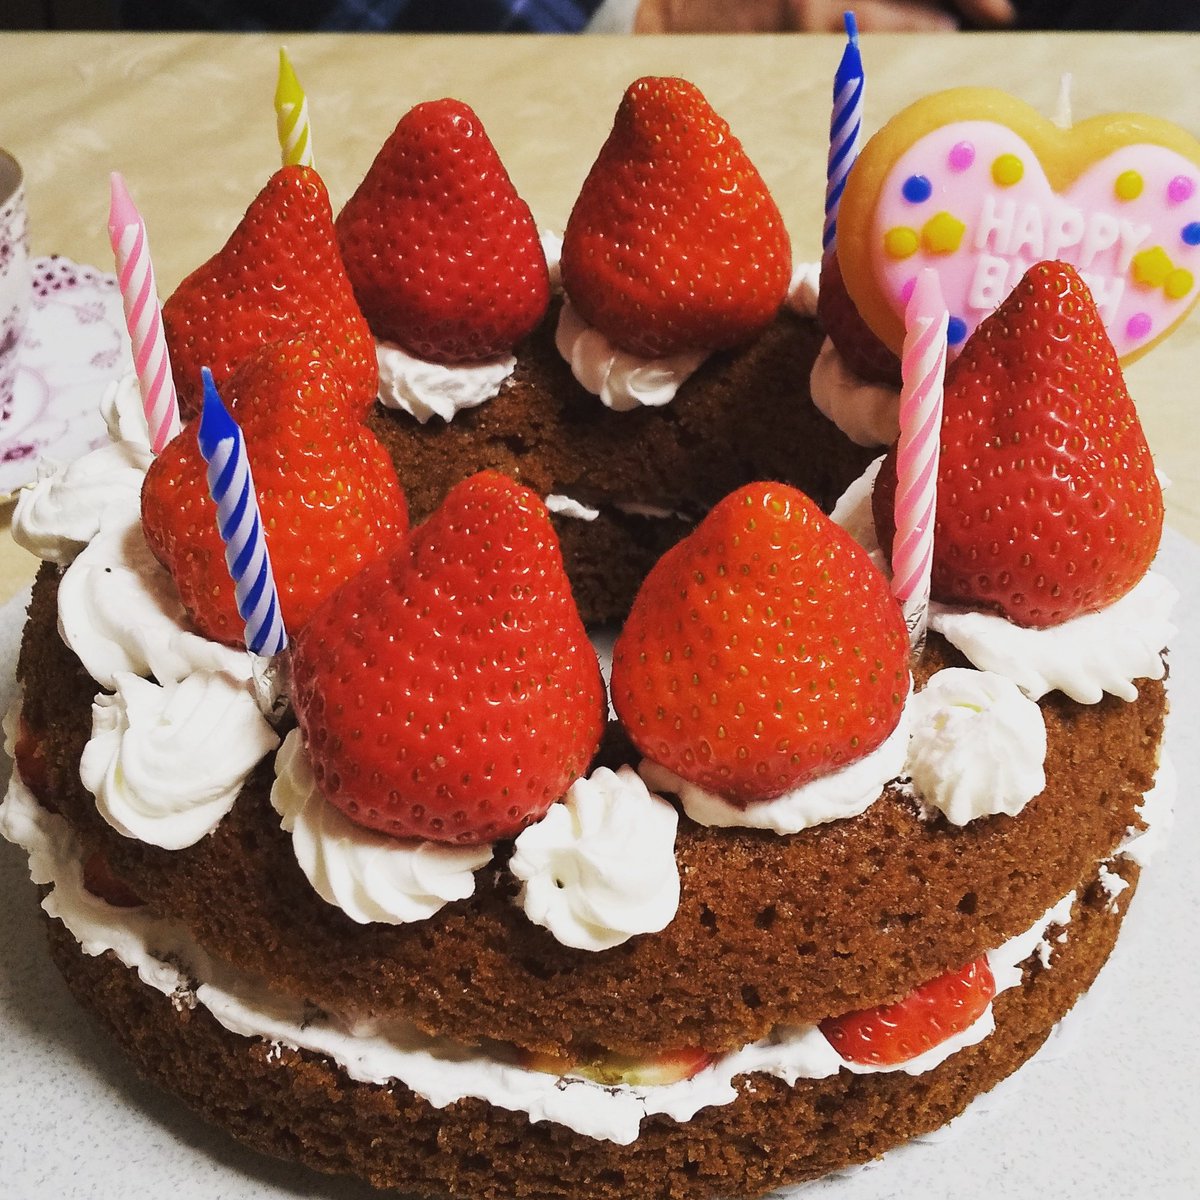 Naru なる 誕生日ケーキ 家族の誕生日なので作りました シンプルに作れるケーキレシピは貴重 泡立て器不要 スプーンで 混ぜるだけだけど きれいに焼けます 誕生日ケーキ シンプルケーキ ココアケーキ